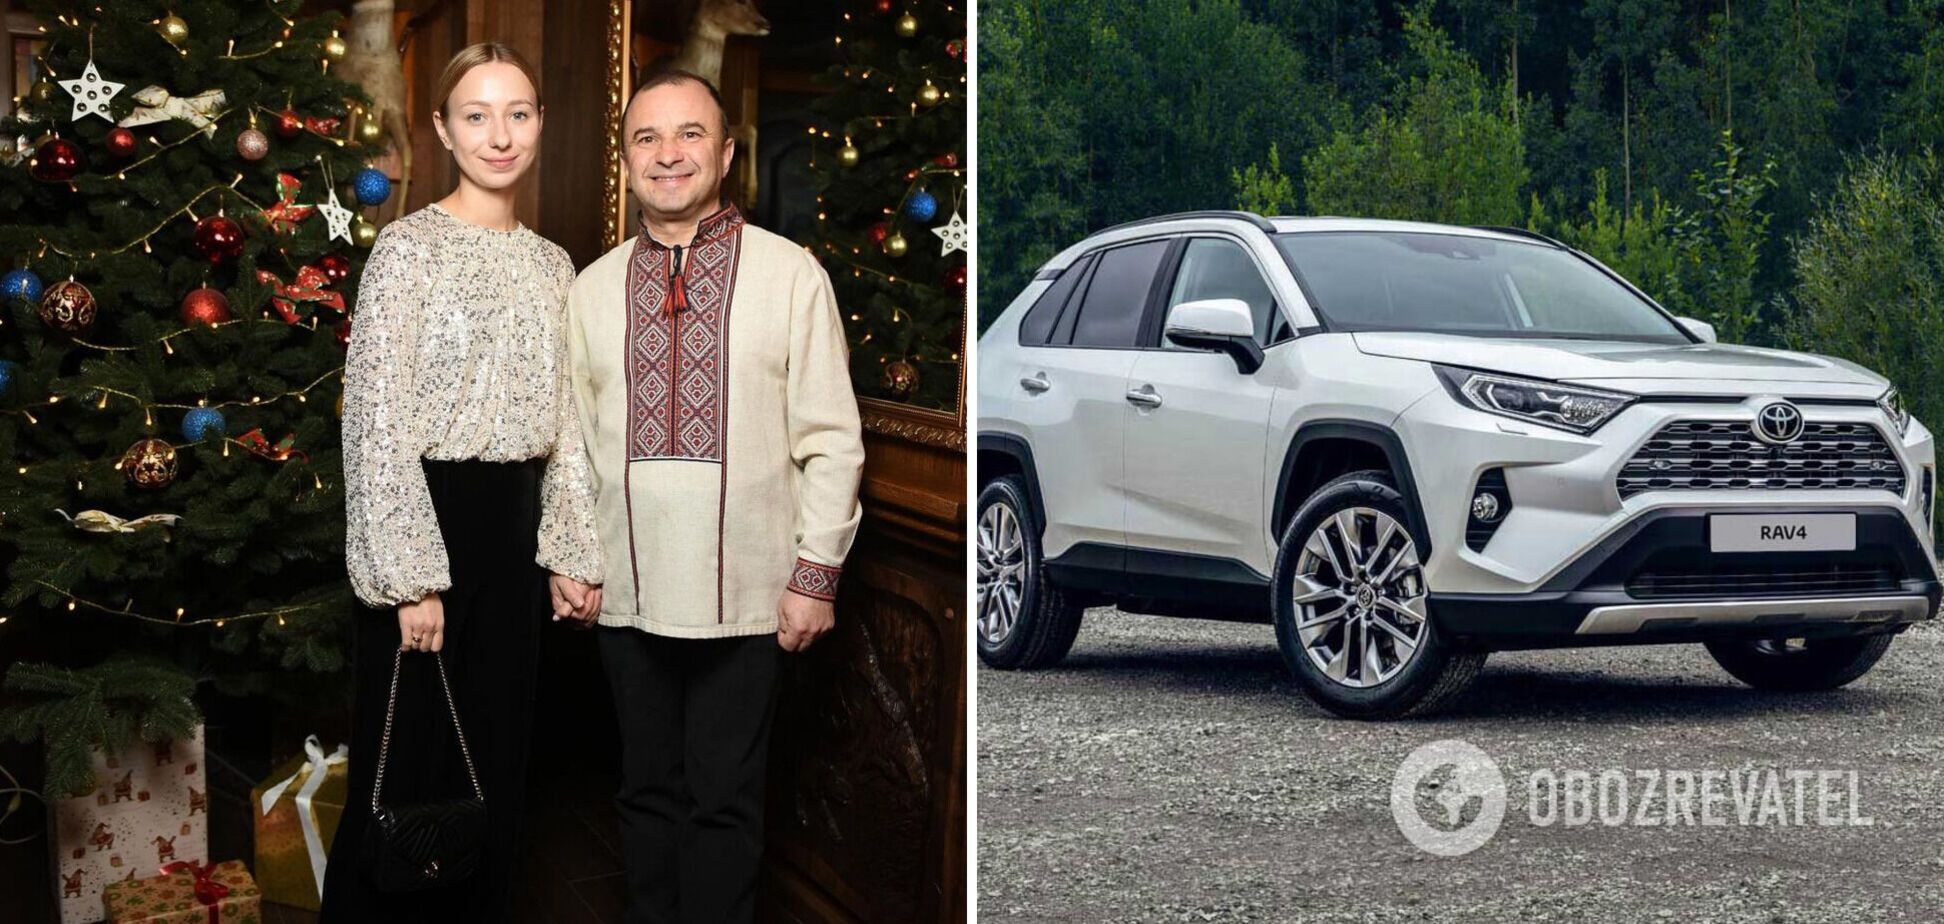 Виктор Павлик с женой купили авто премиум-класса за 700 тысяч гривен